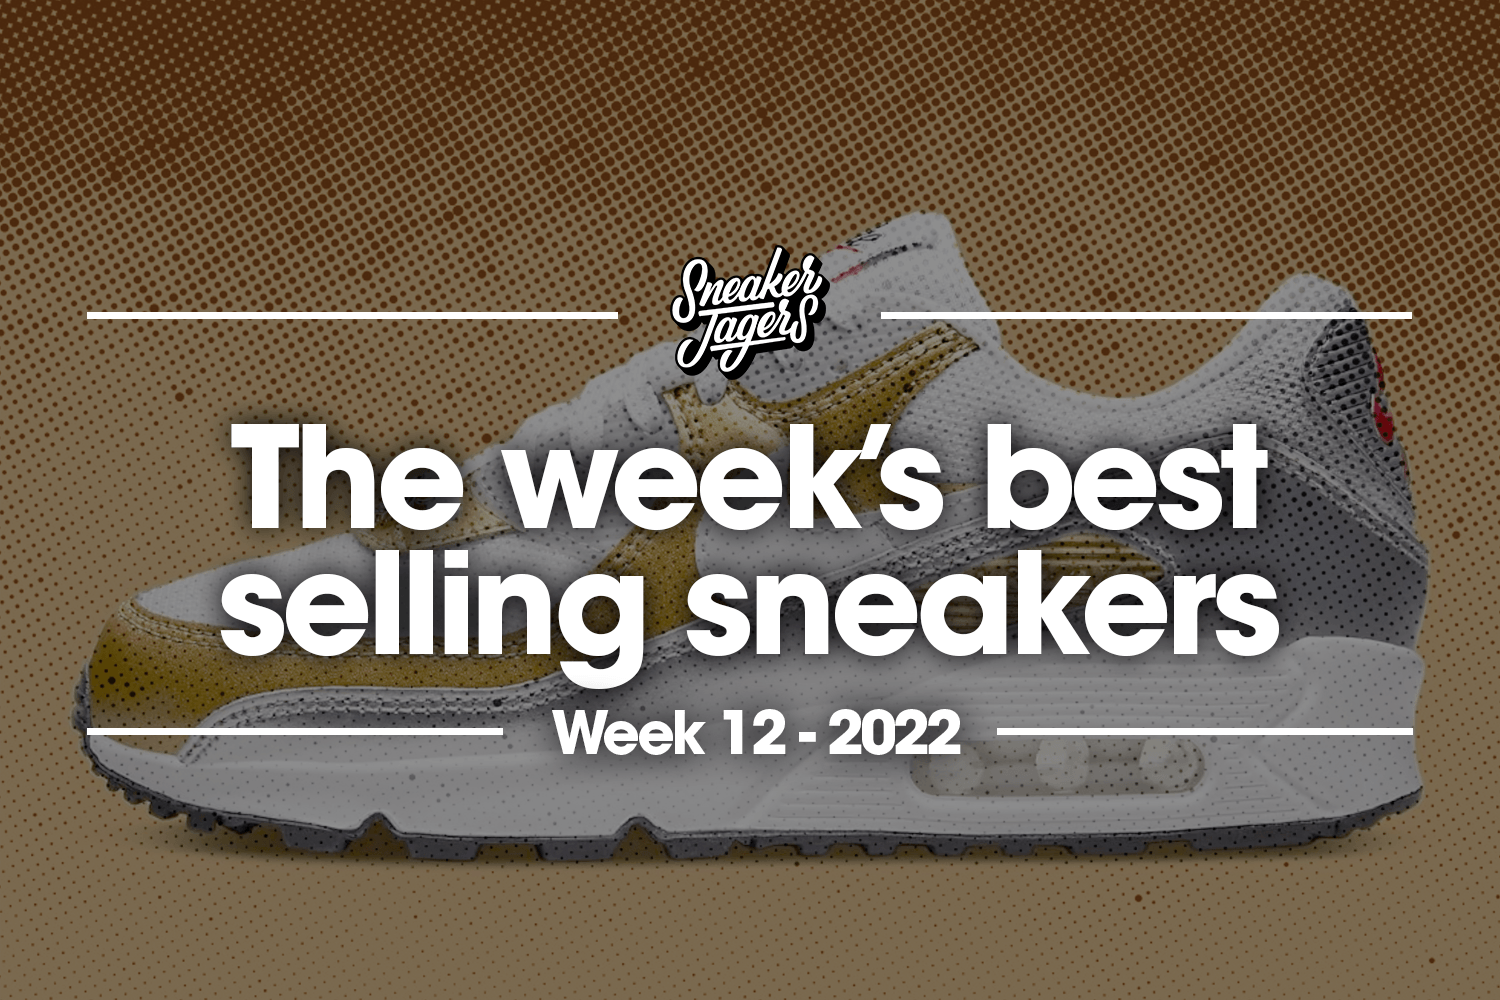 De 5 bestverkochte sneakers van week 12